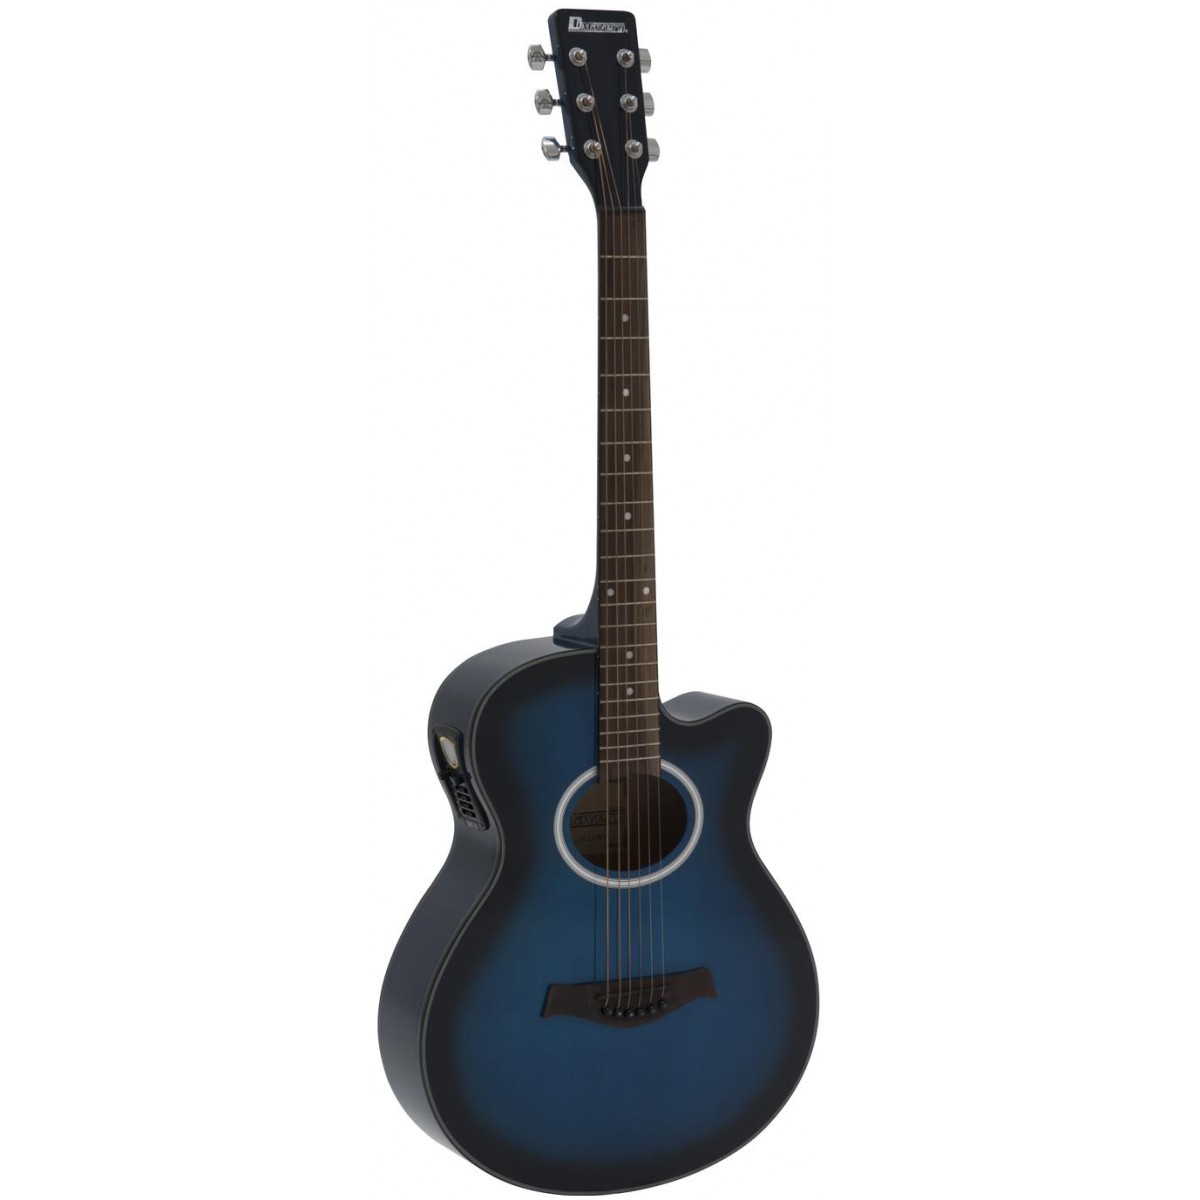 Fotografie Dimavery AW-400, elektroakustická kytara typu Folk, modrá stínovaná